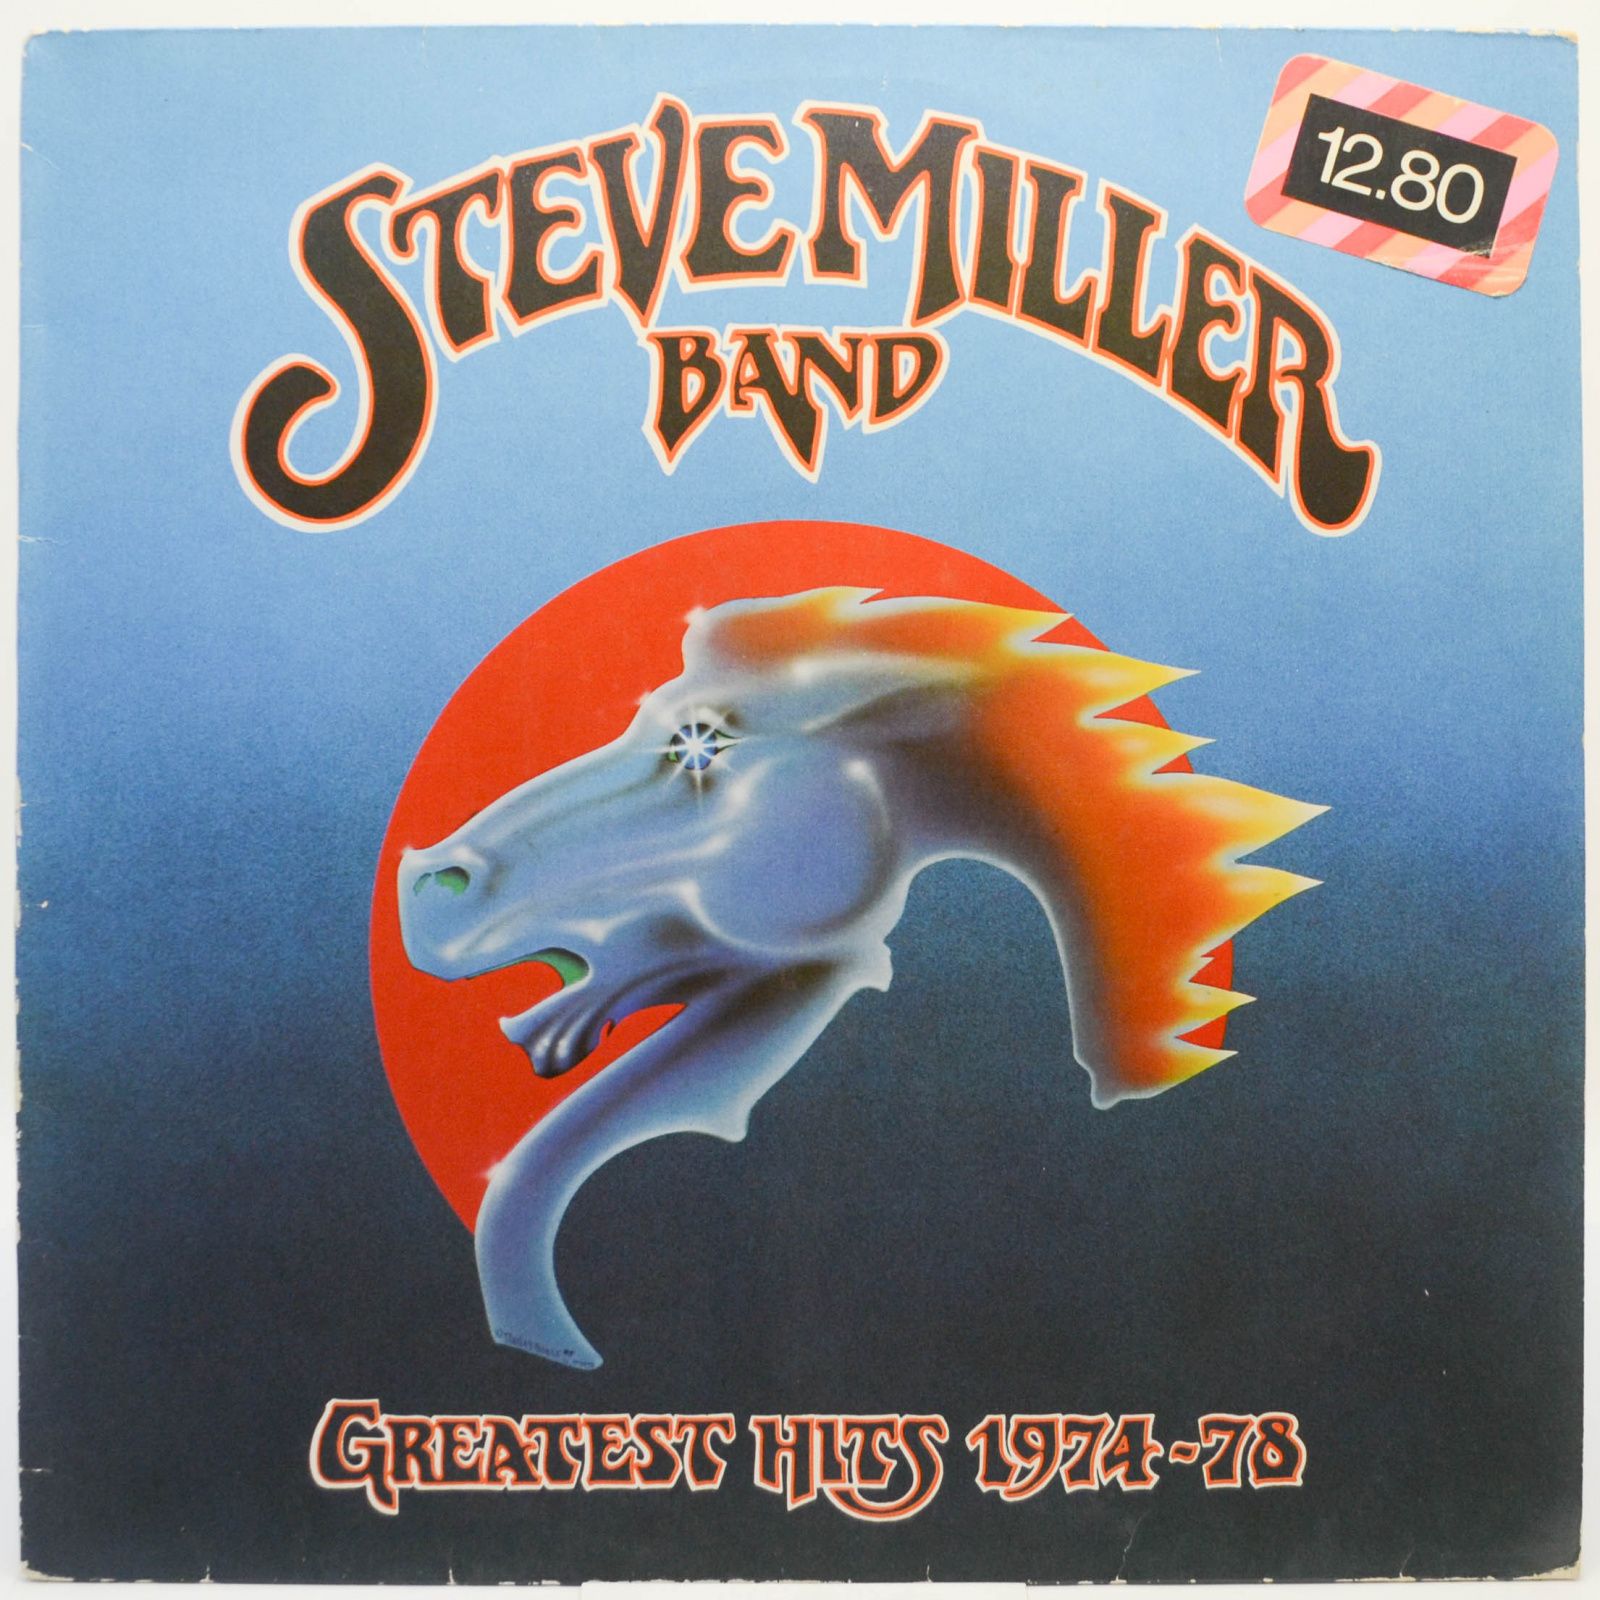 Steve Miller Band — Greatest Hits 1974-78, 1978